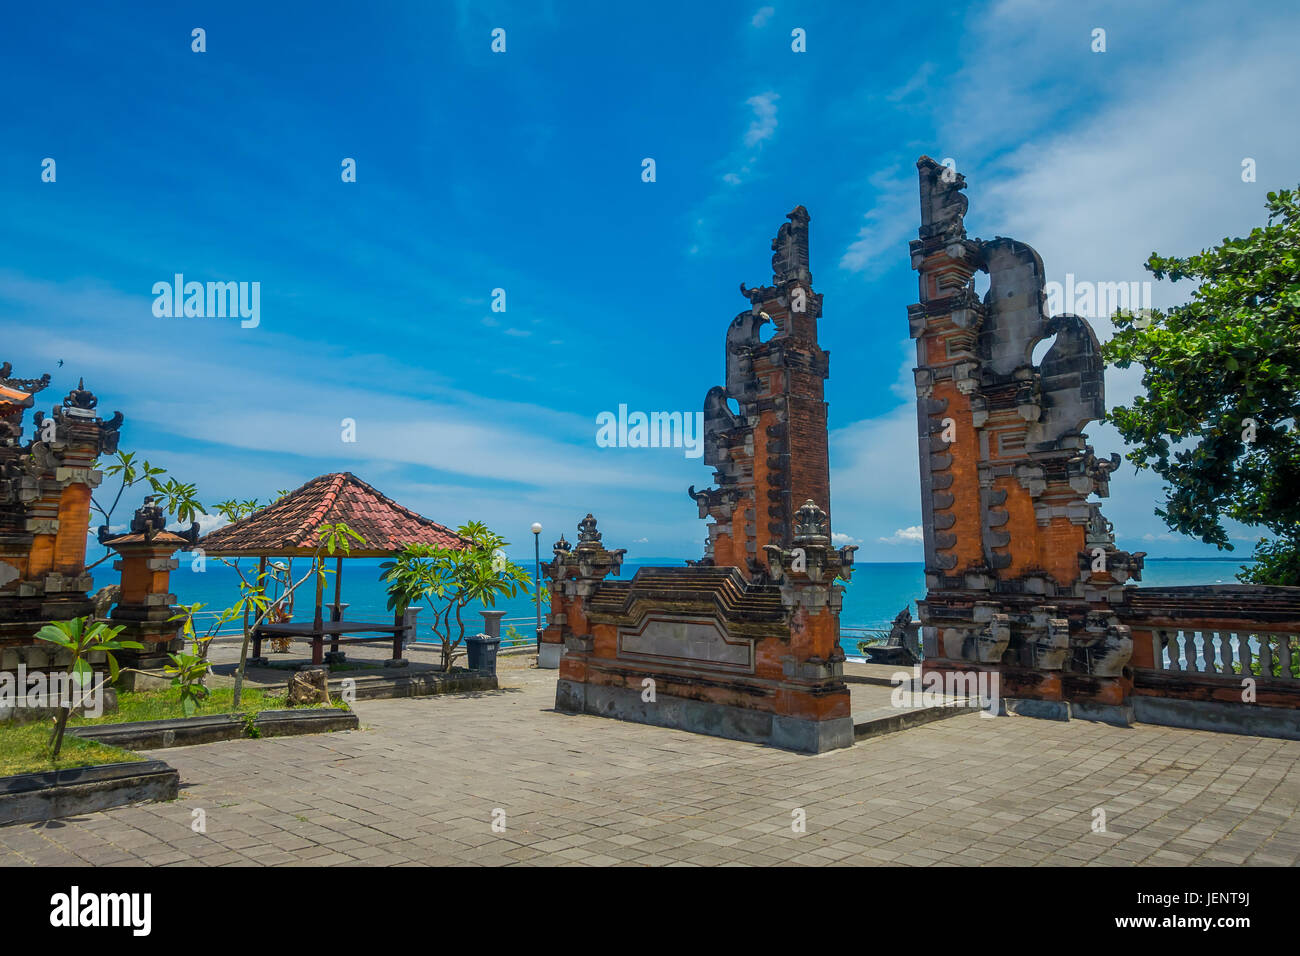 BALI, Indonesien - 5. März 2017: Pura Ulun Danu Bratan ist eine große Shivaite und Wasser-Tempel auf der Insel Bali, Indonesien. Stockfoto